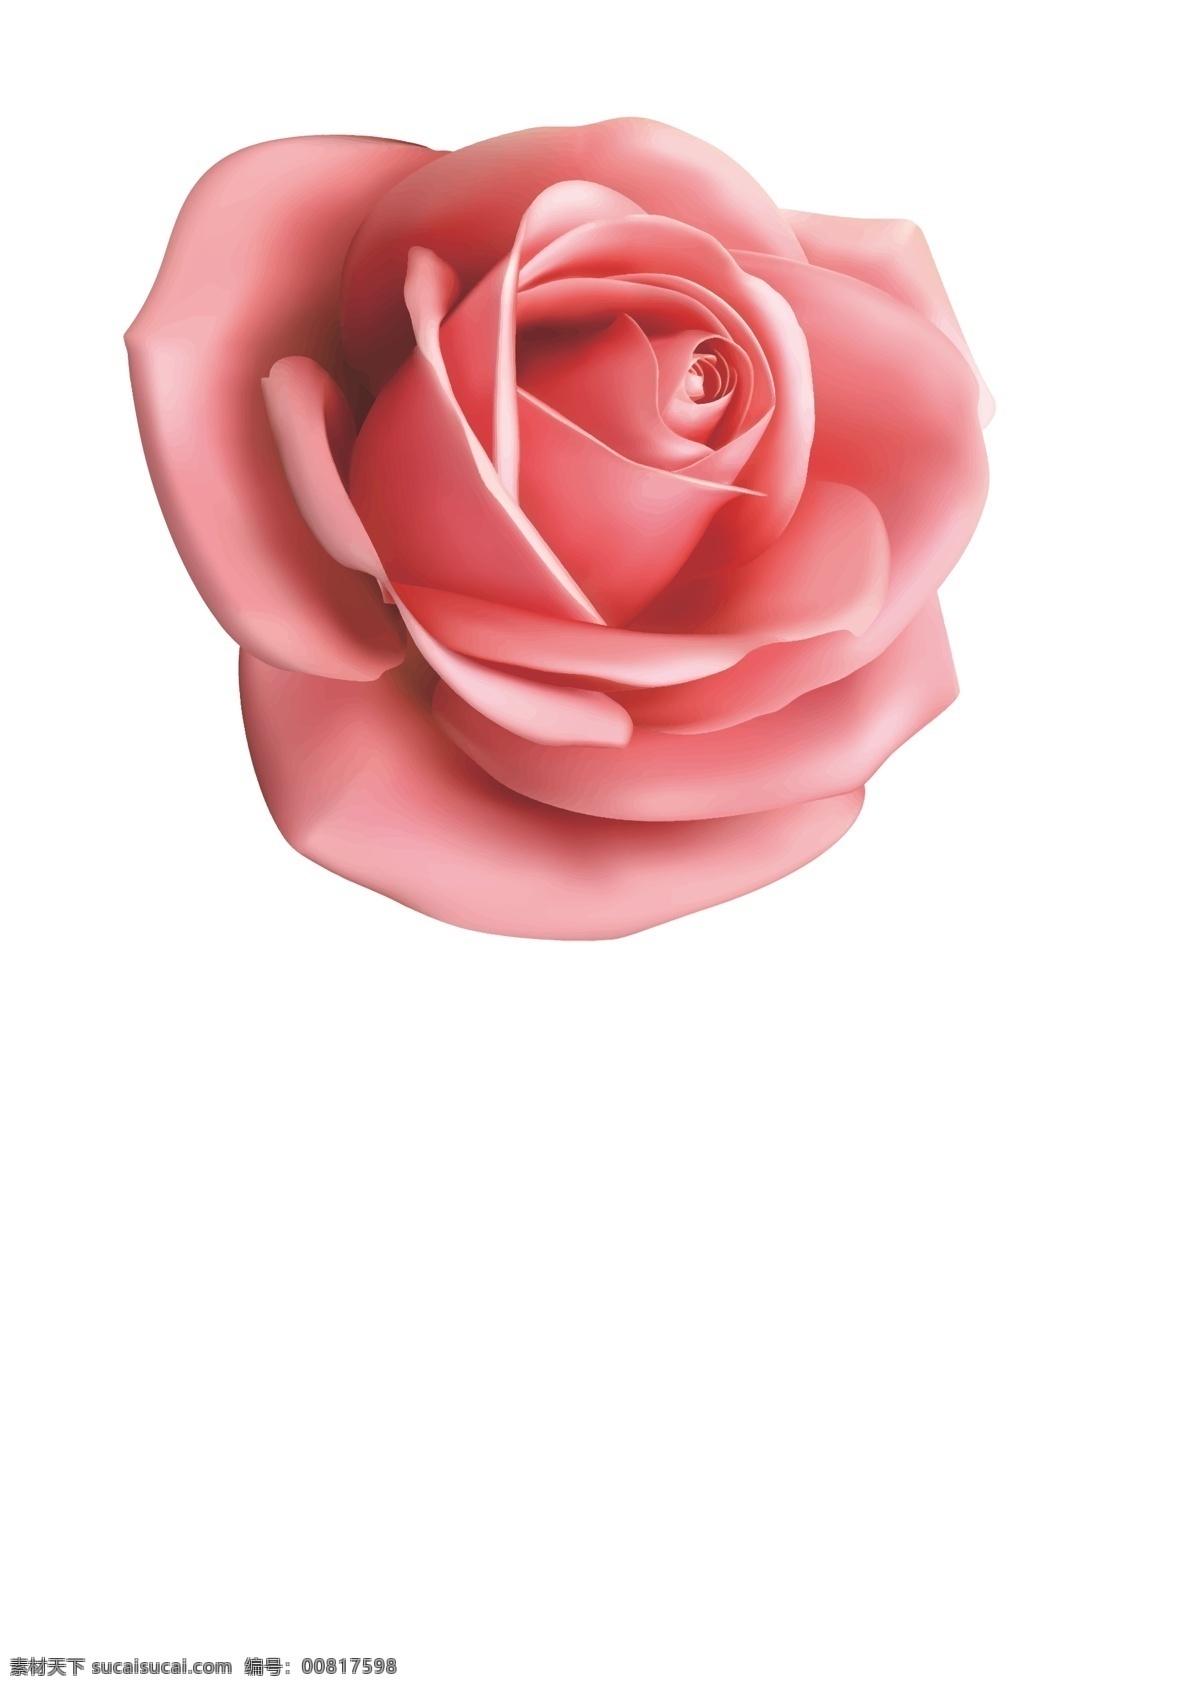 玫瑰花 粉玫瑰 矢量 源文件 玫瑰 粉色玫瑰 花卉 植物 矢量源文件 生物世界 花草